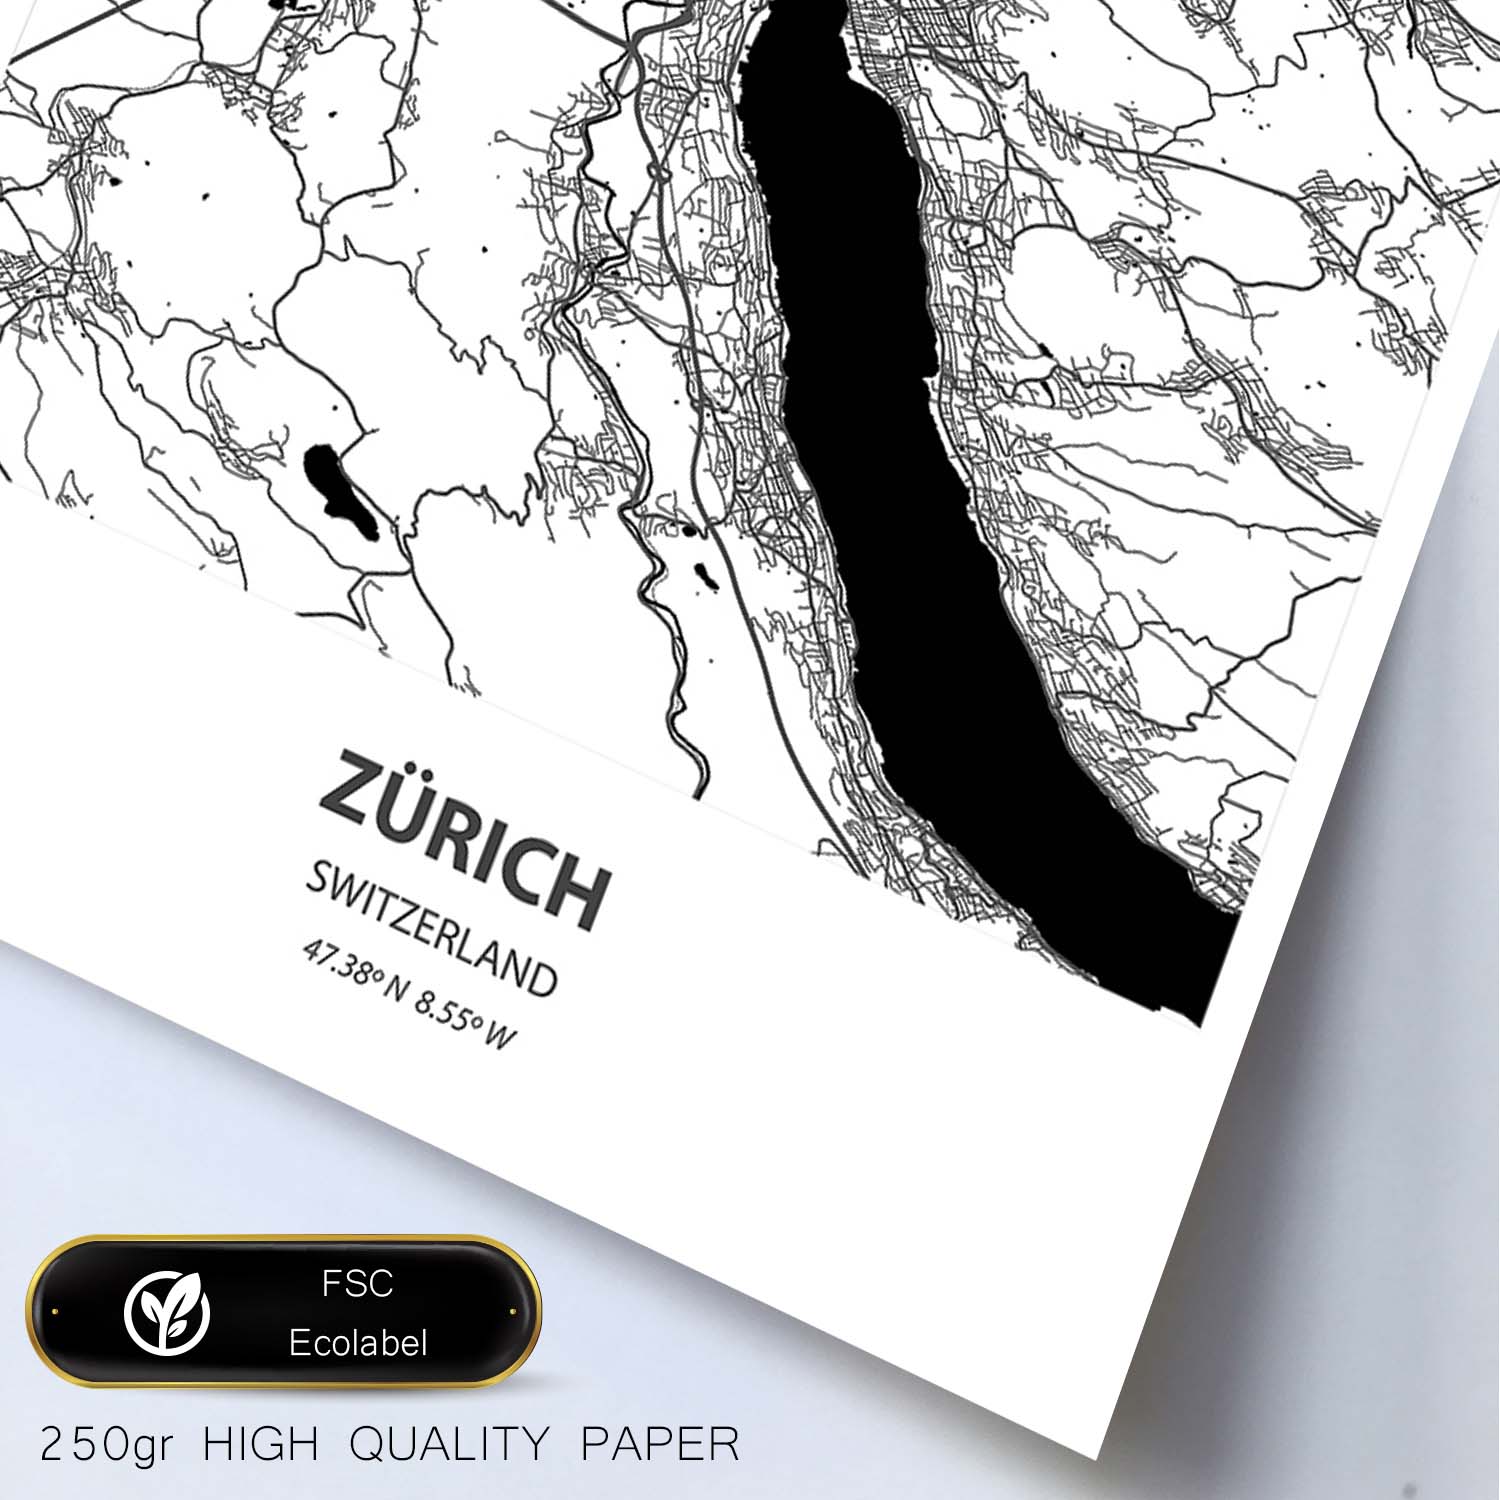 Poster con mapa de Zurich - Suiza. Láminas de ciudades de Europa con mares y ríos en color negro.-Artwork-Nacnic-Nacnic Estudio SL